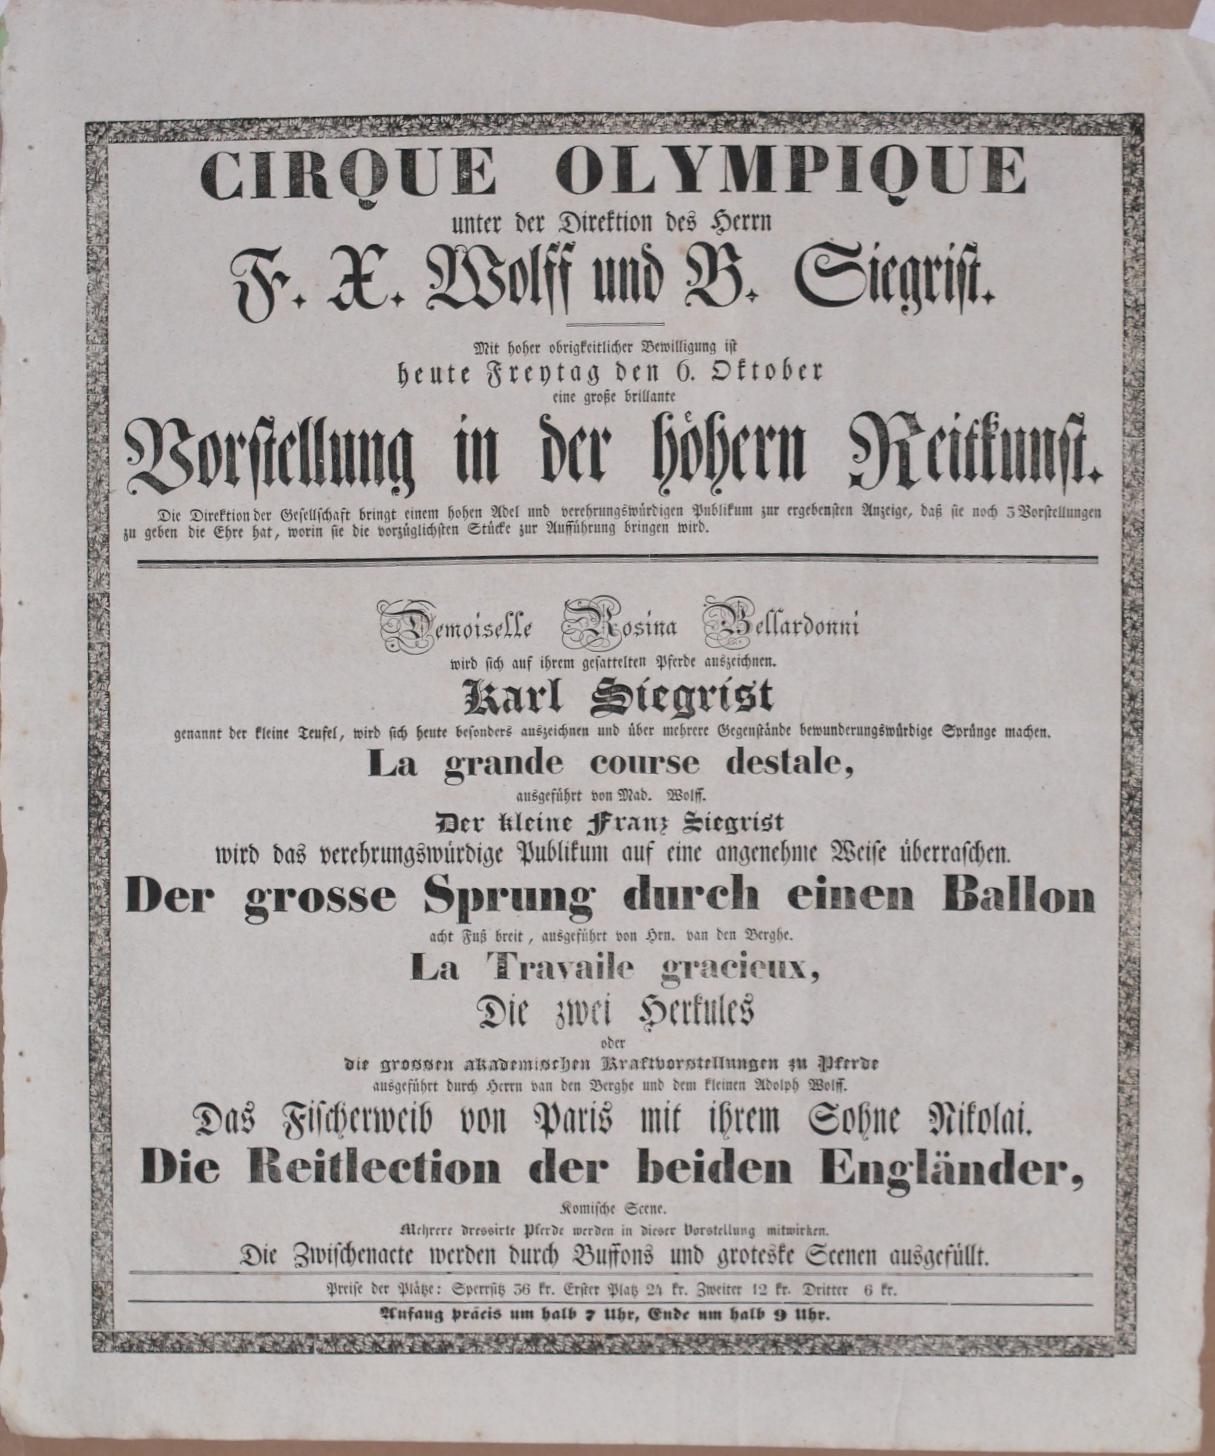  - Cirque Olympique unter der Direktion des Herrn F. X. Wolff und B. Siegrist. Eine grosse brillante Vorstellung in der hhern Reitkunst..